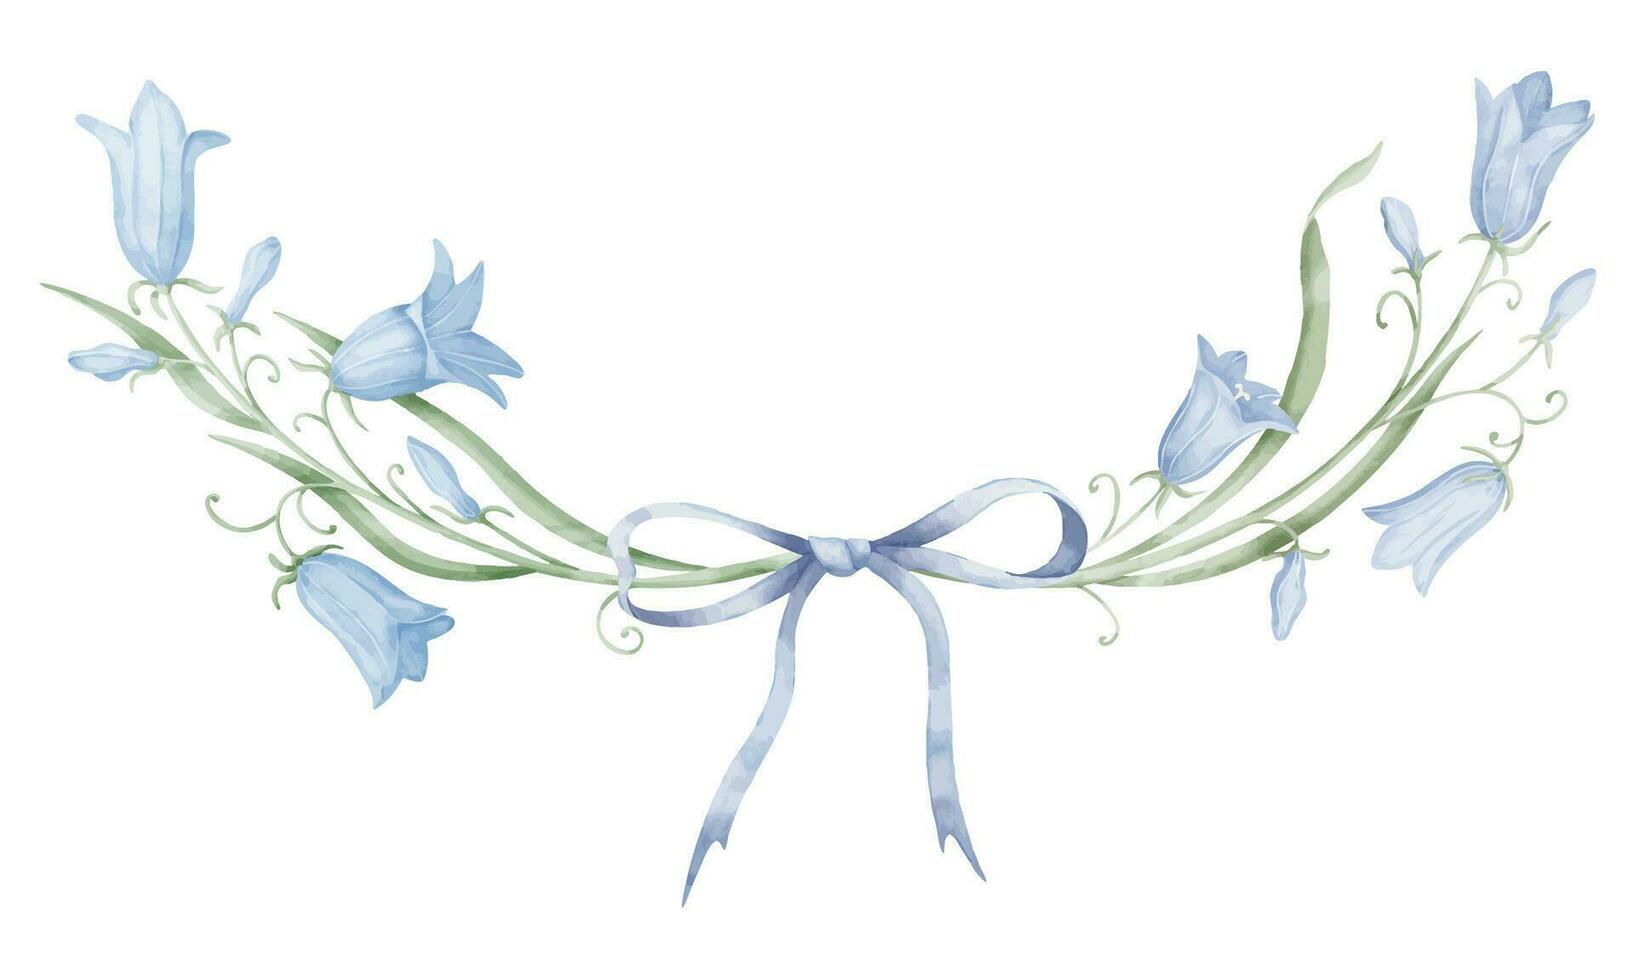 blommig krans av klocka blommor. hand dragen vattenfärg ram med blåklockor på isolerat bakgrund. botanisk cirkulär bakgrund med vild blåklockor i pastell färger för bröllop inbjudningar vektor